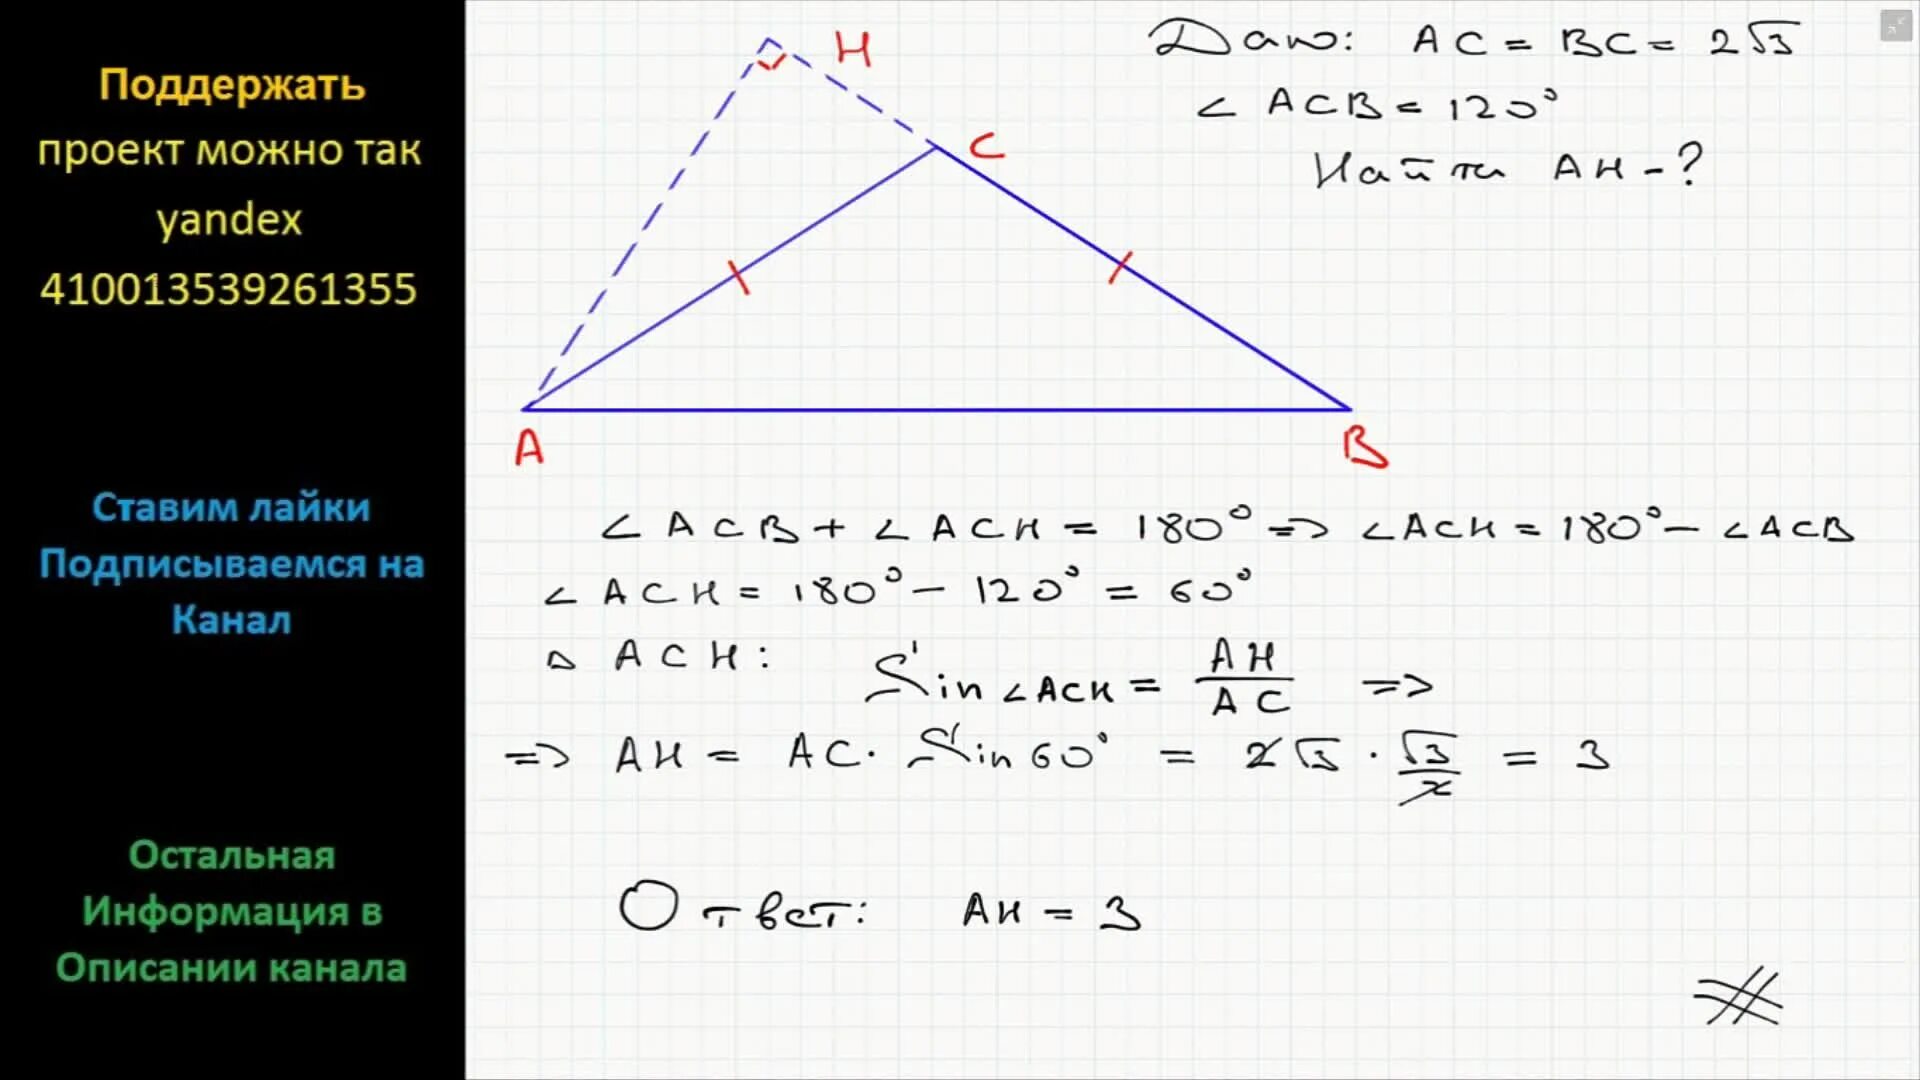 В прямоугольном треугольнике авс ае биссектриса. Угол противолежащий основанию равнобедренного треугольника 120. Угол,противолежащий оснваниюравнобедренного треугольника Раве 120. Угол противолежащий основанию равнобедренного треугольника. Угол противолежащий основанию равнобедренного треугольника равен 120.